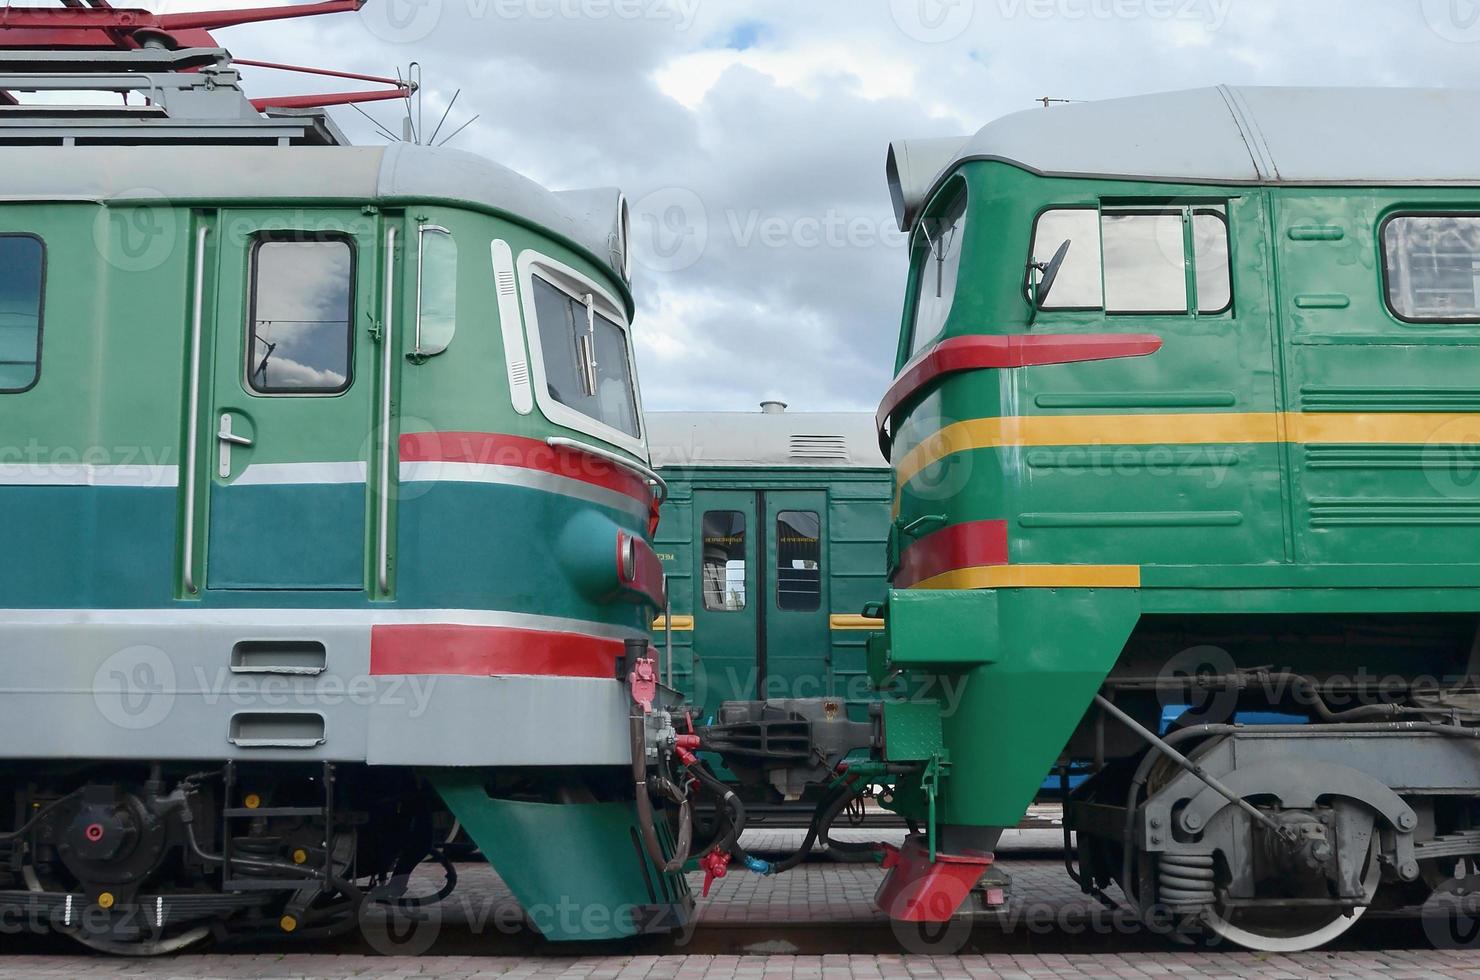 táxis de trens elétricos russos modernos. vista lateral das cabeças dos trens ferroviários com muitas rodas e janelas em forma de vigias foto